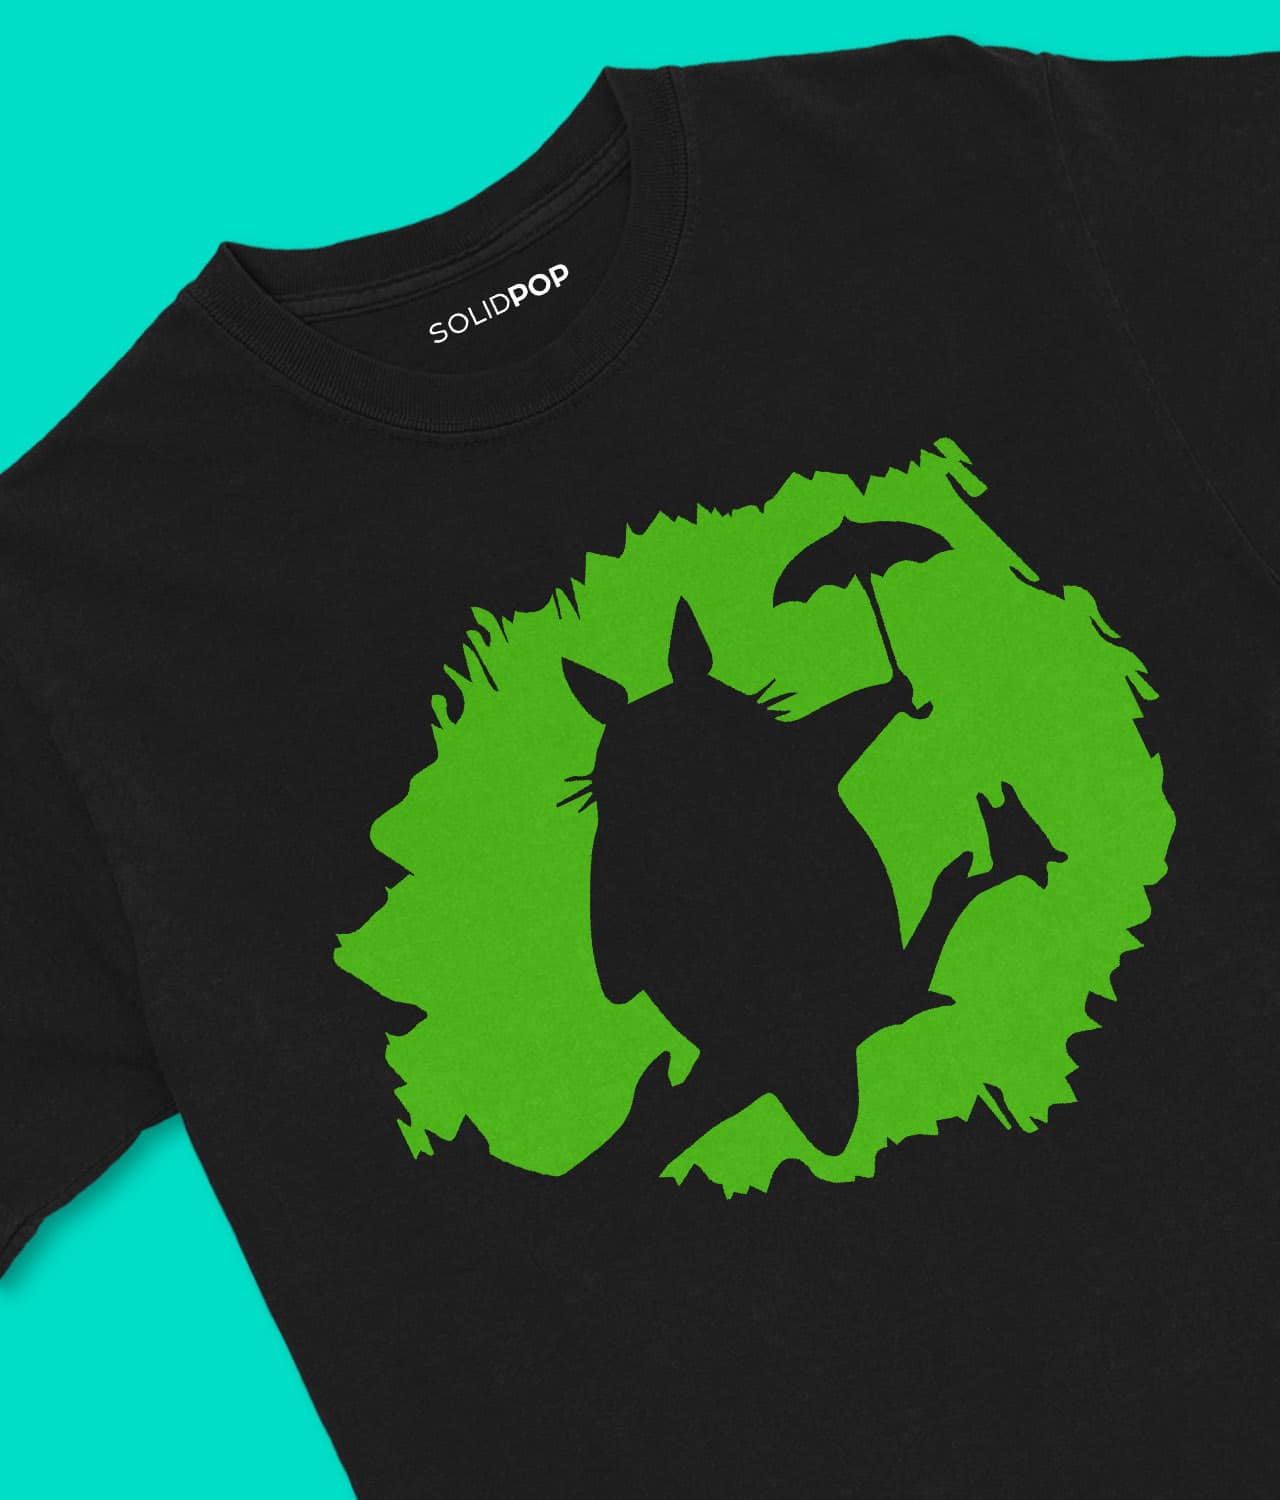 Buy My Neighbor Totoro Shirt • SOLIDPOP ®